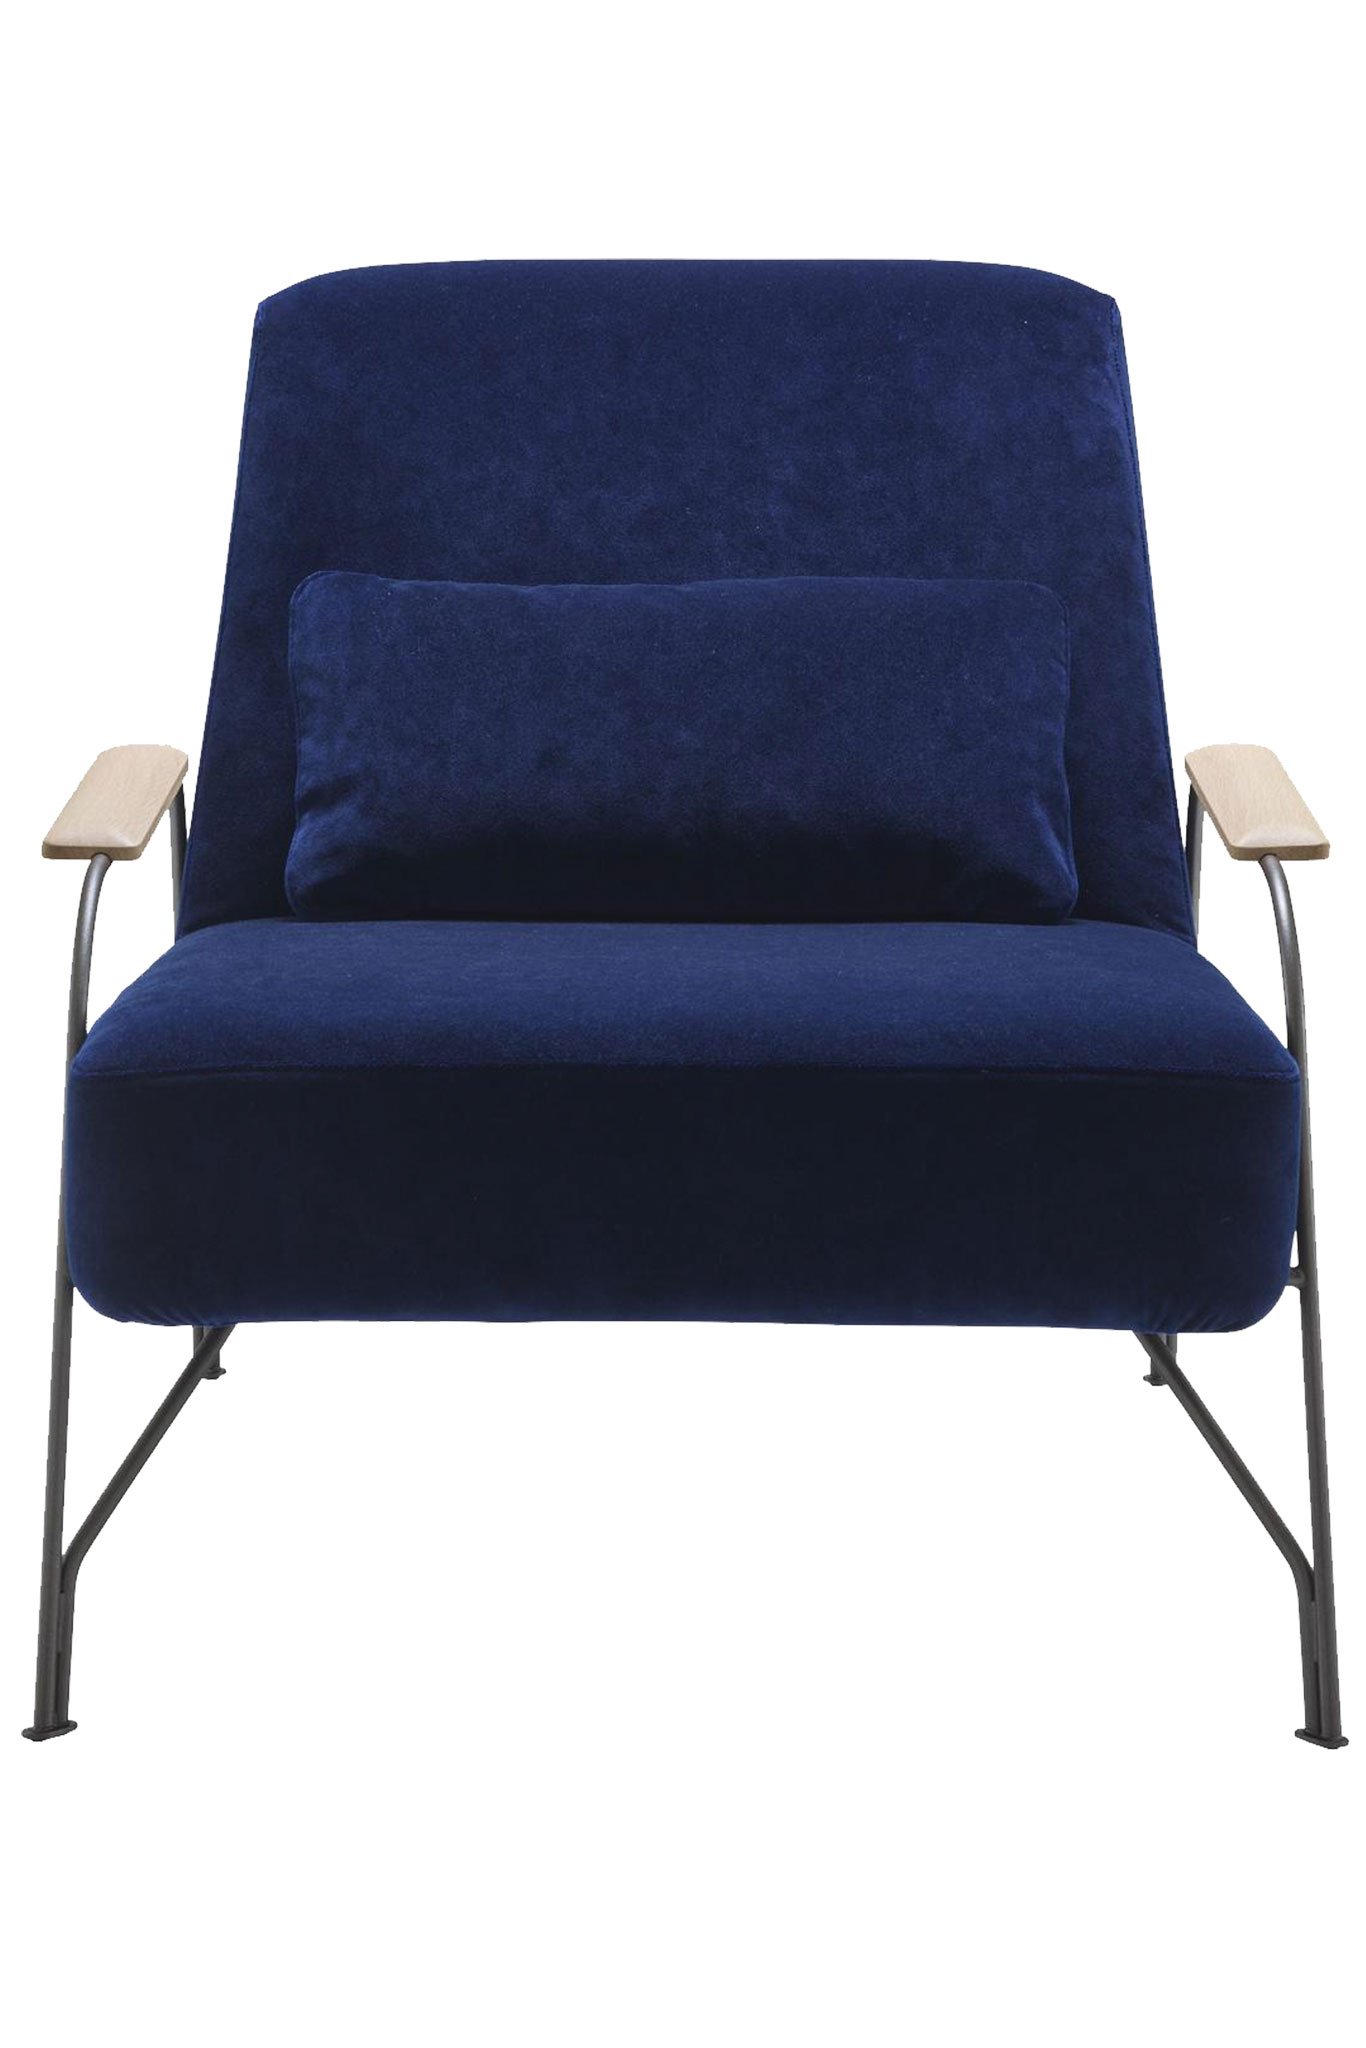 Der Sessel »Humphrey« von Evangelos Vasilaiou interpretiert die 50er-Jahre neu: typischer Kontrast zwischen breiter Sitzfläche und fragilem Gestell. ligne-roset.com